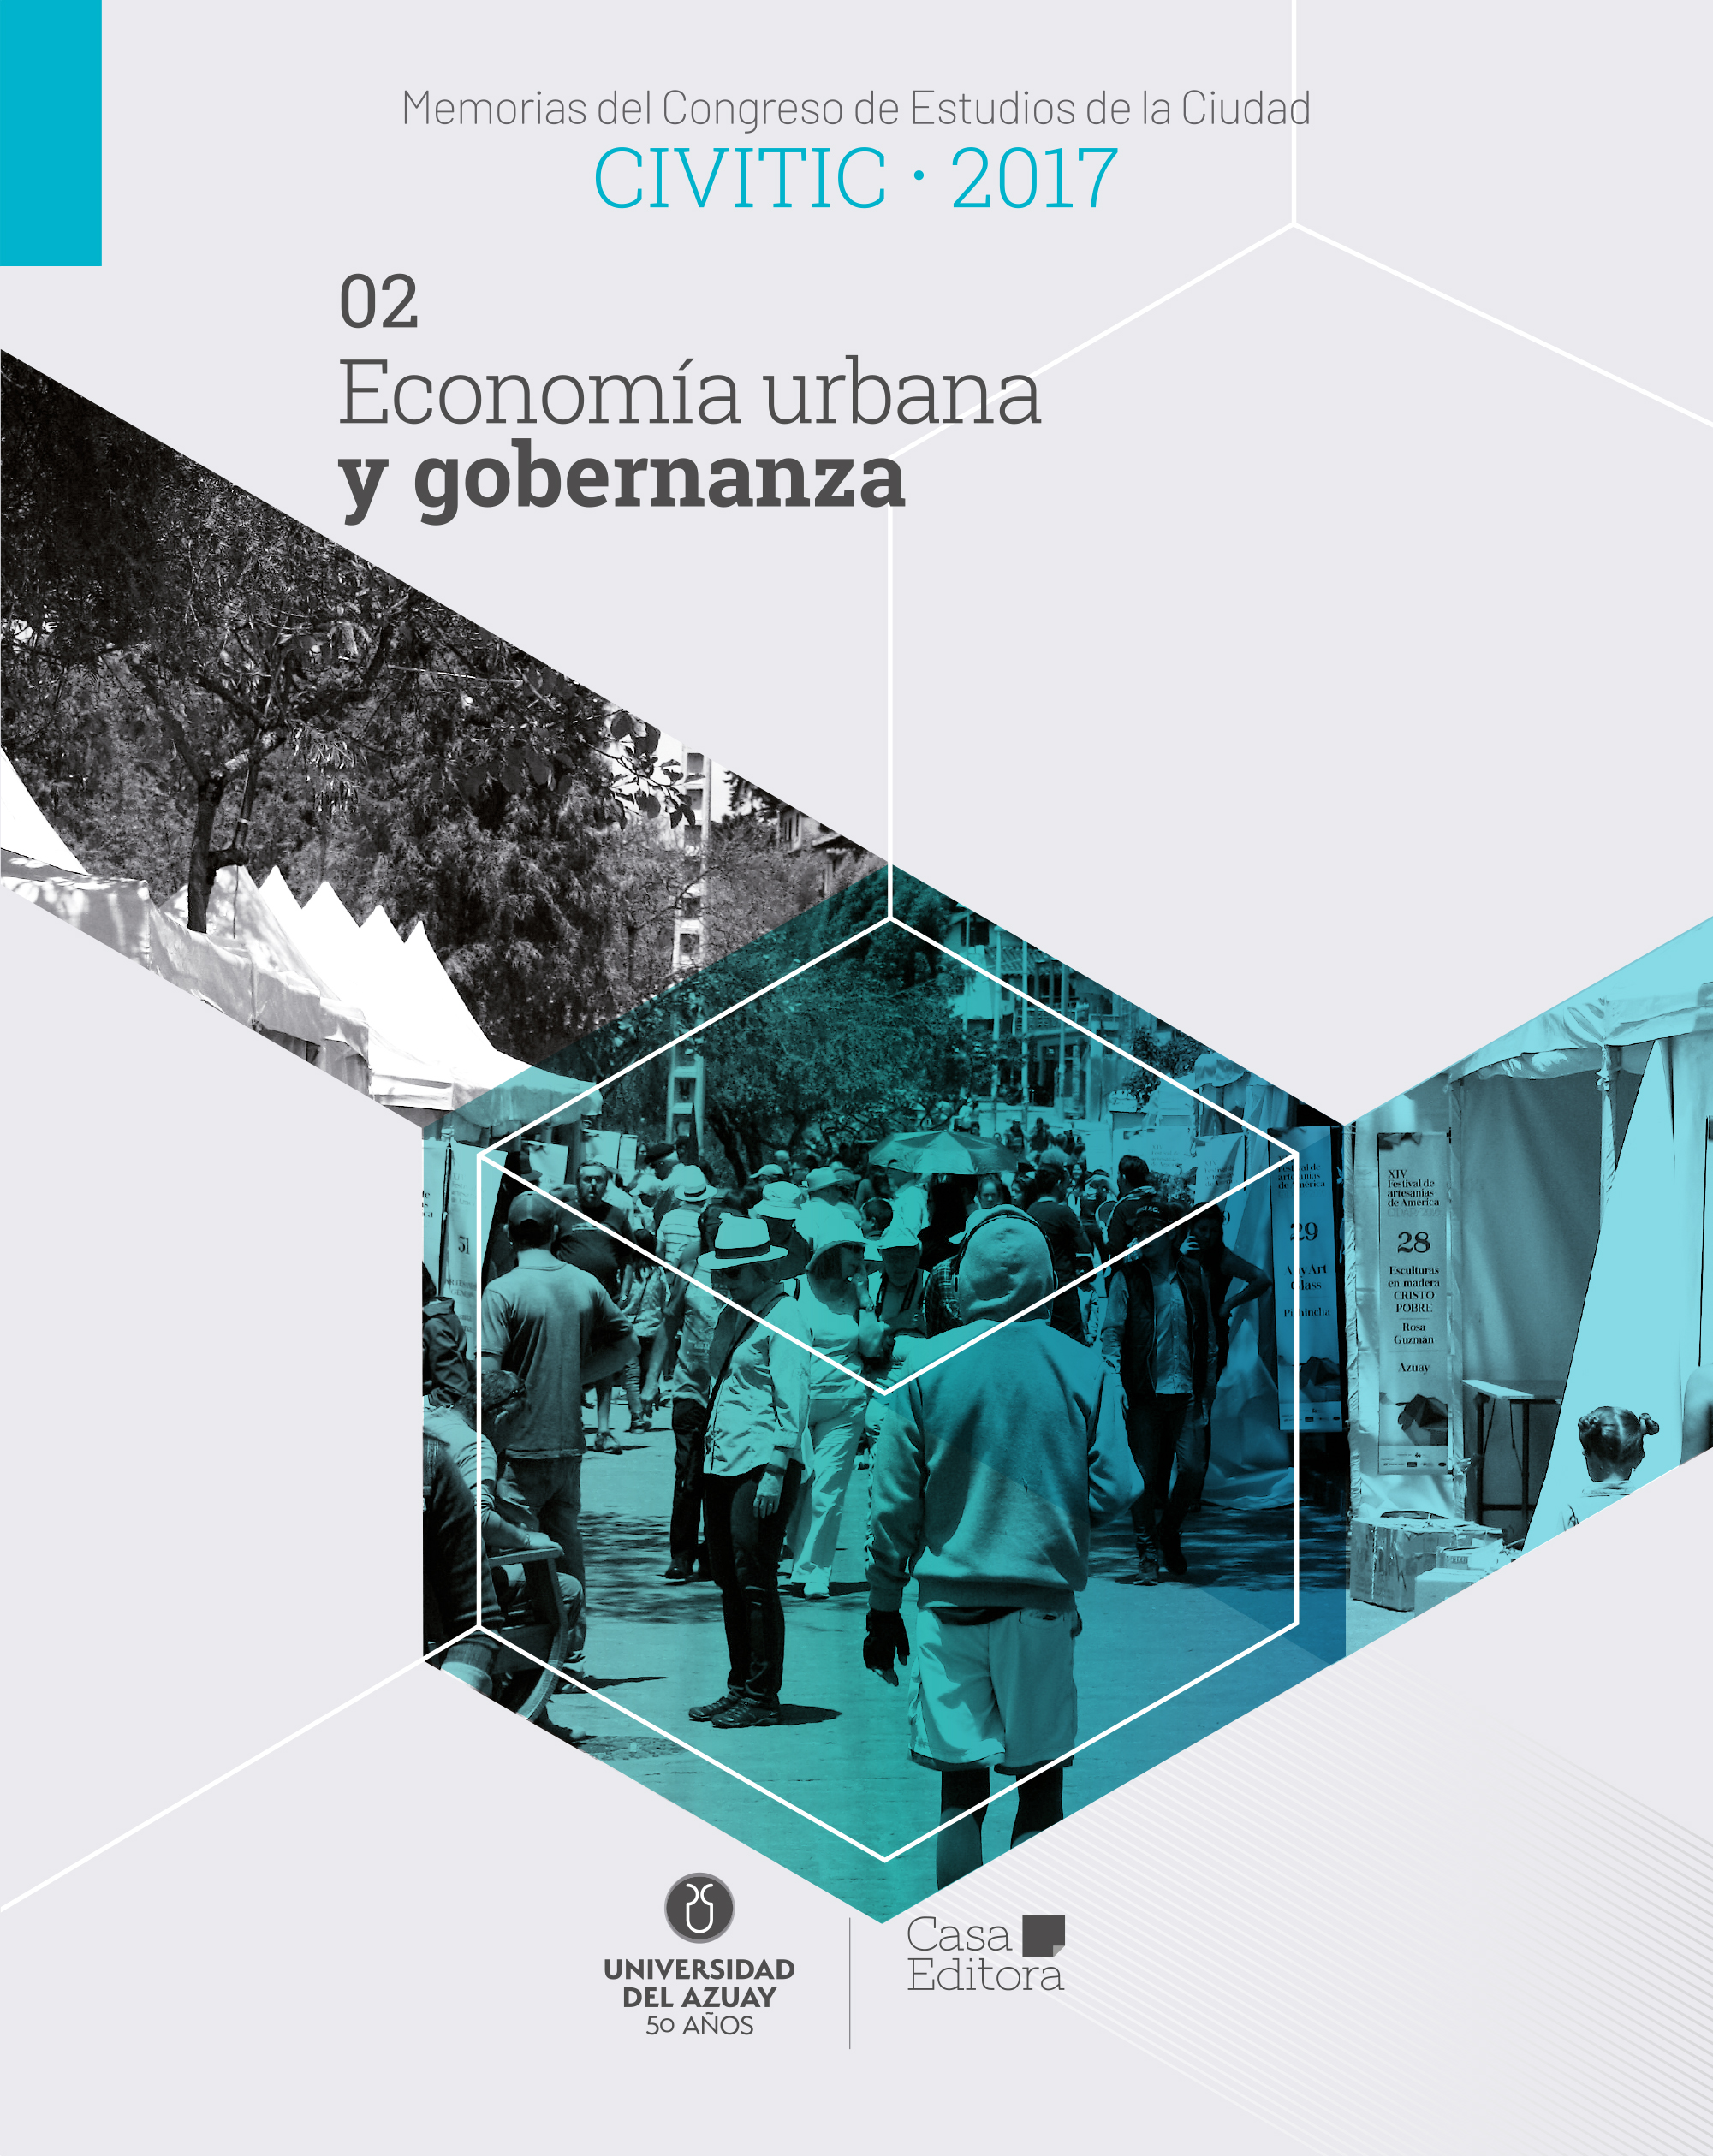 					Visualizar Memorias del Congreso de Estudios de la Ciudad CIVITIC 2017 - Economía urbana y gobernanza
				